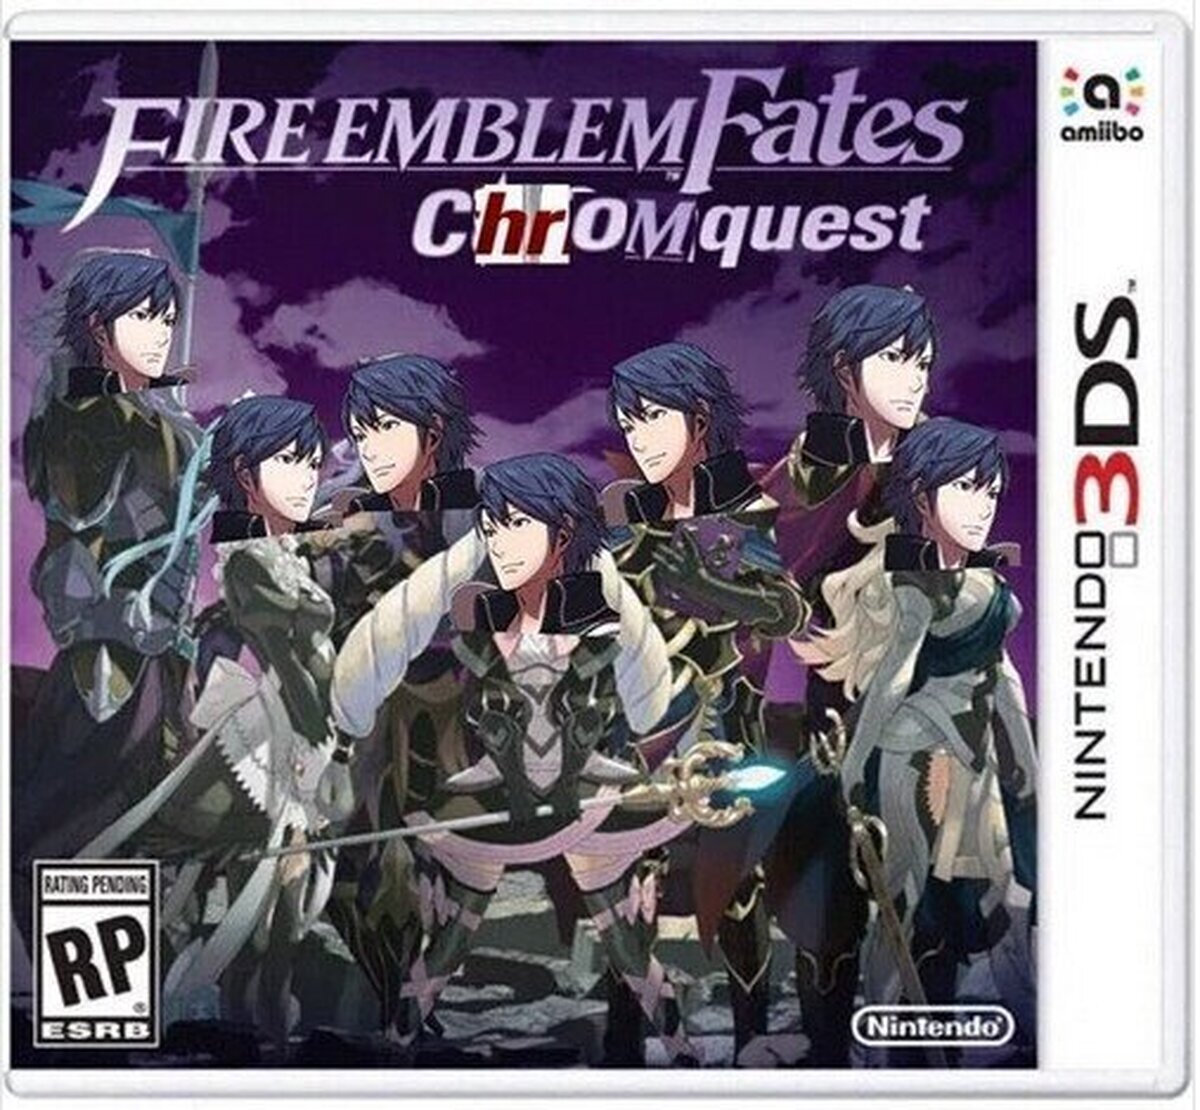 La edición de definitiva de Fire Emblem Fates